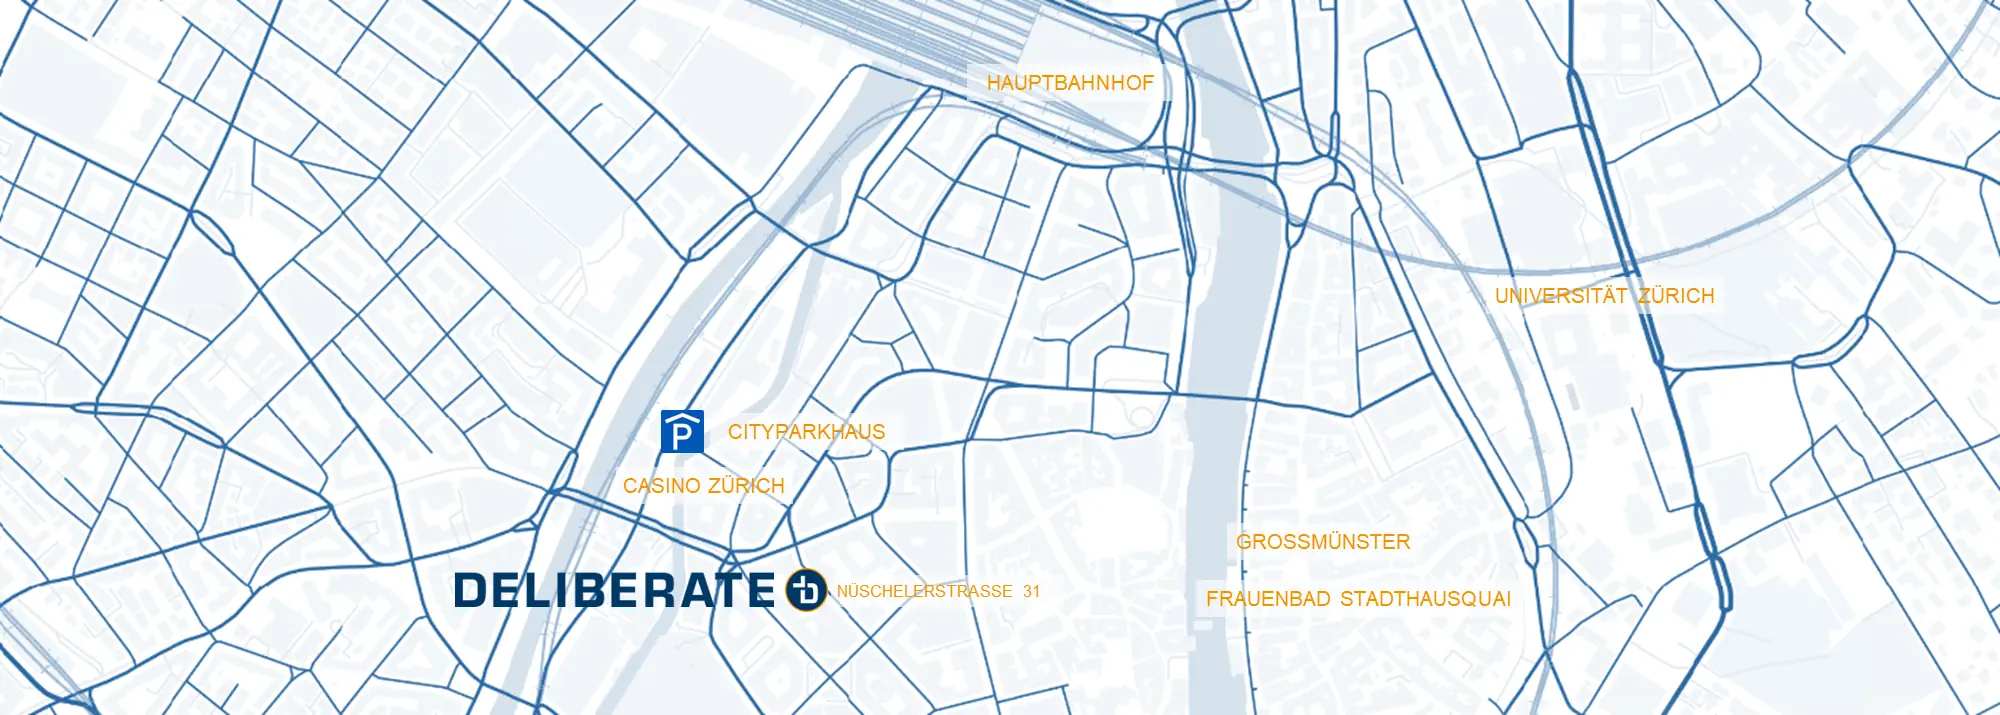 map - Nüschelerstrasse 31